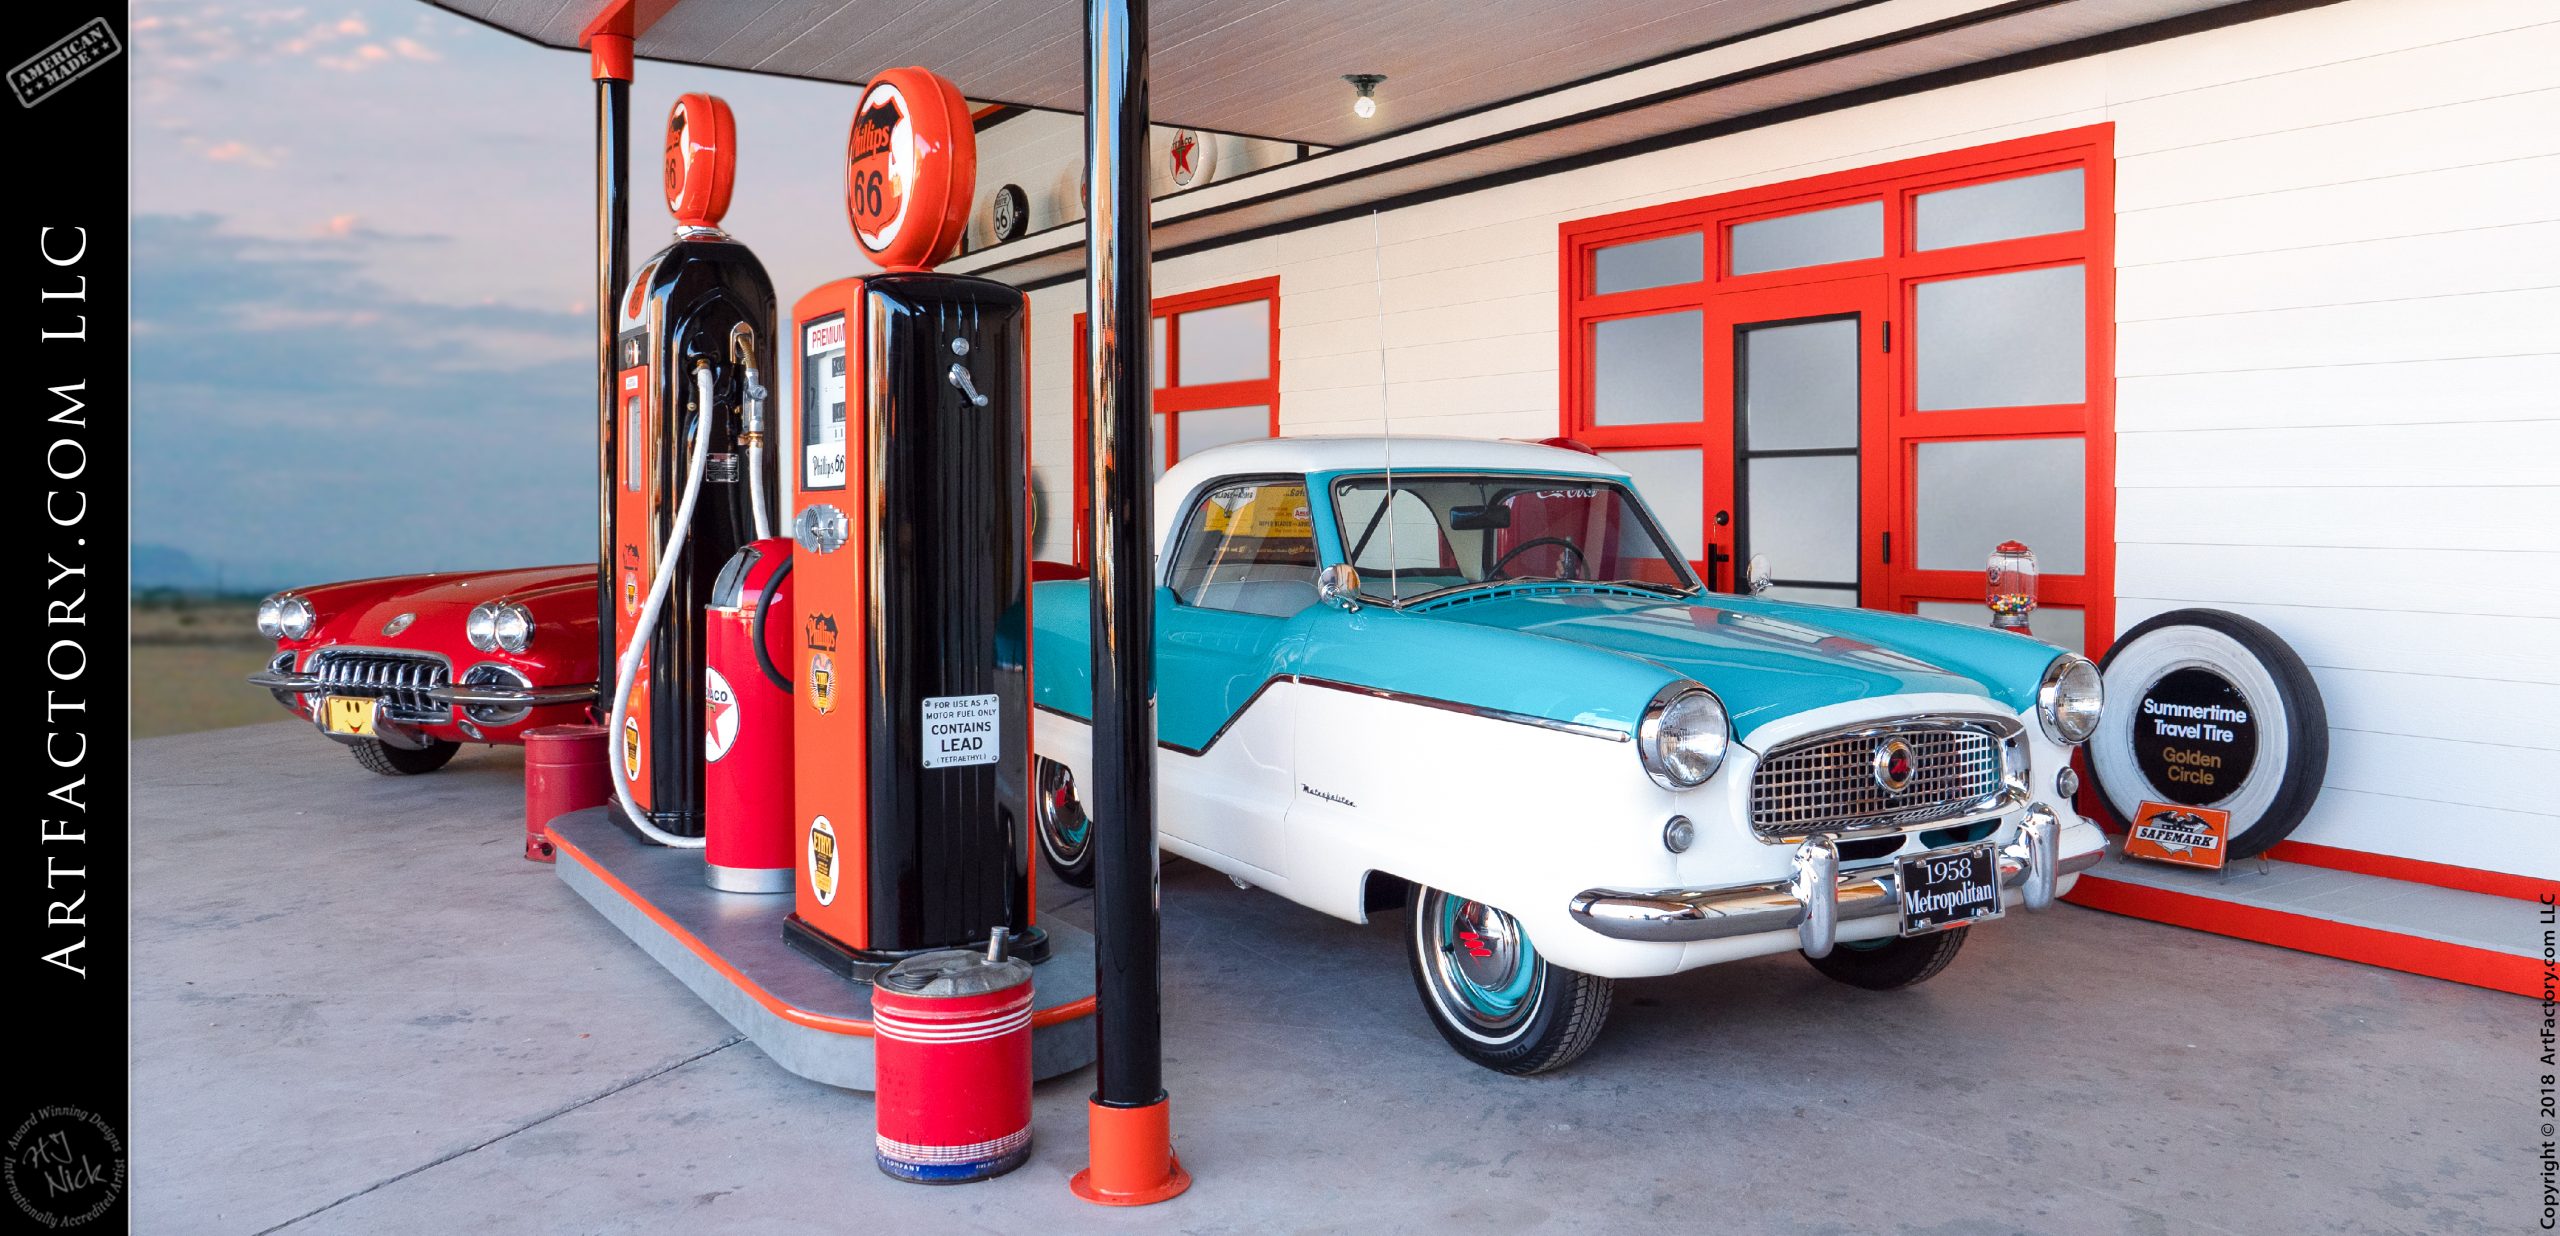 Custom Vintage Gas Station Display